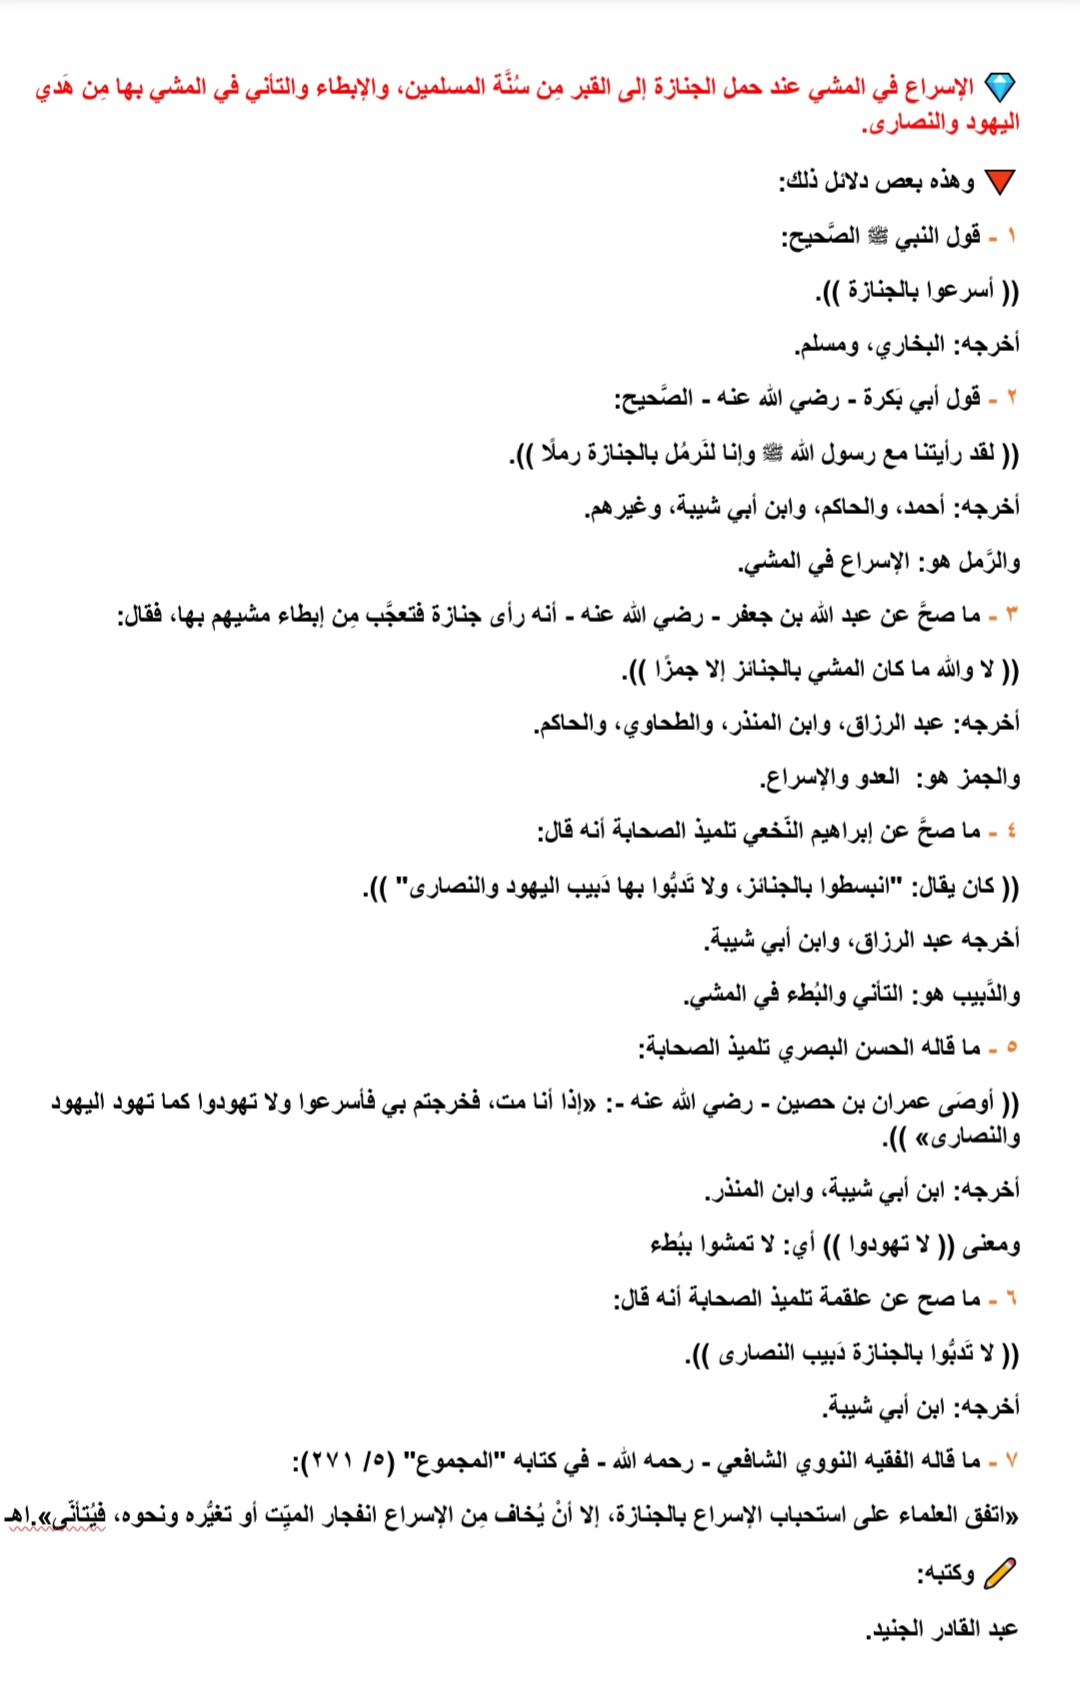 27 رسائـل الأدعية الرسالة 1 لفضيلة الشيخ محمد بن ابراه